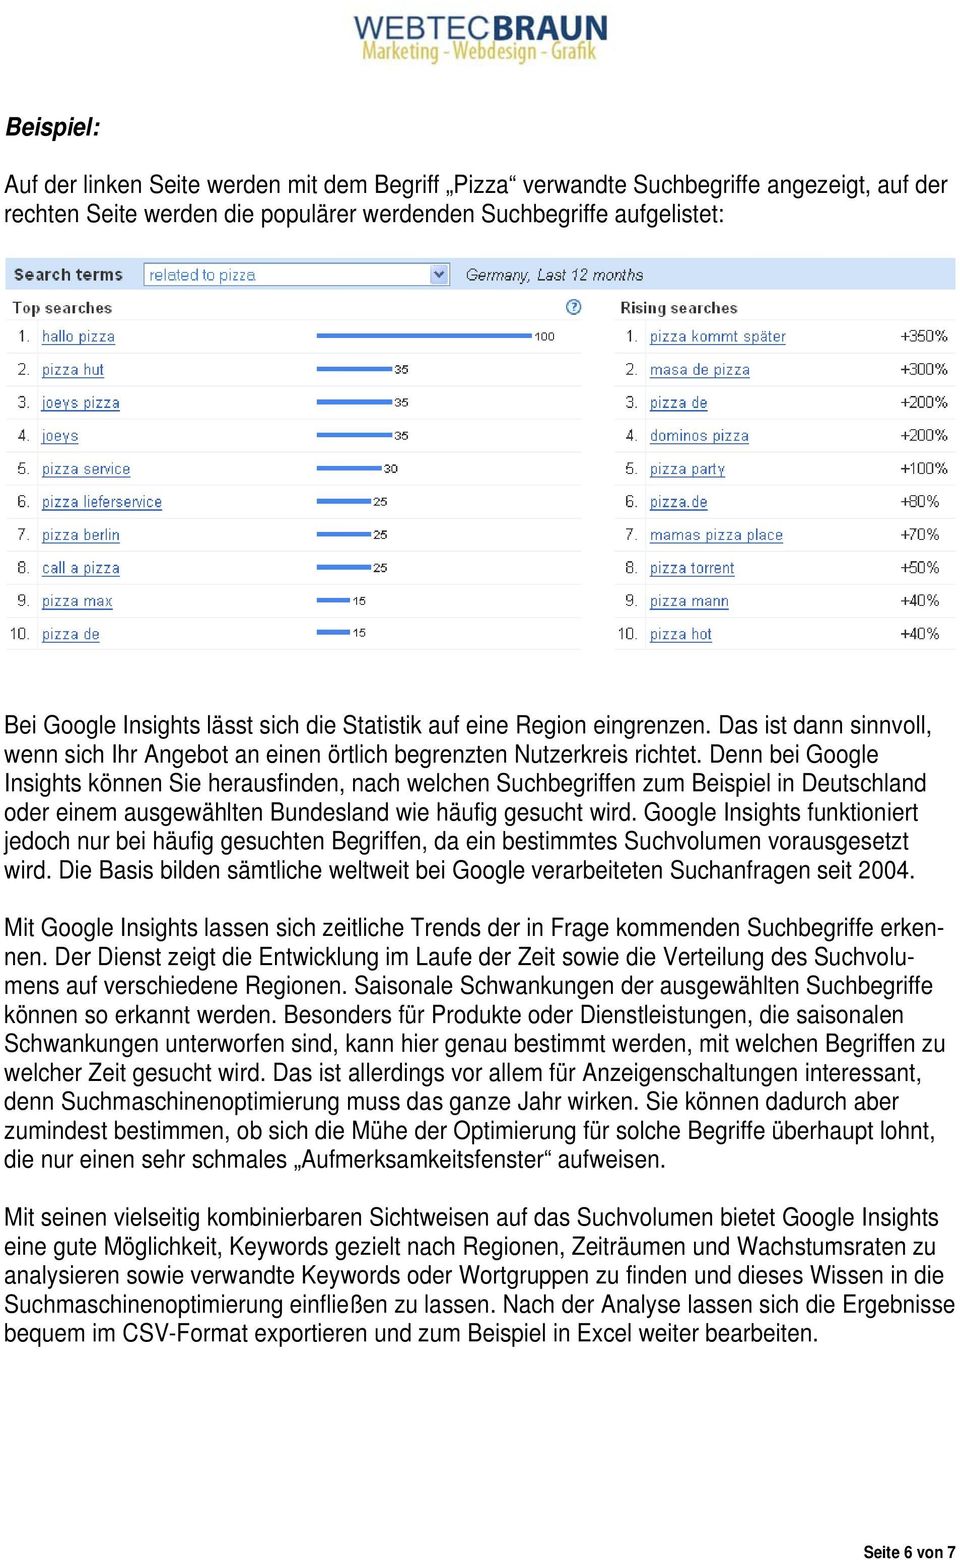 Denn bei Google Insights können Sie herausfinden, nach welchen Suchbegriffen zum Beispiel in Deutschland oder einem ausgewählten Bundesland wie häufig gesucht wird.